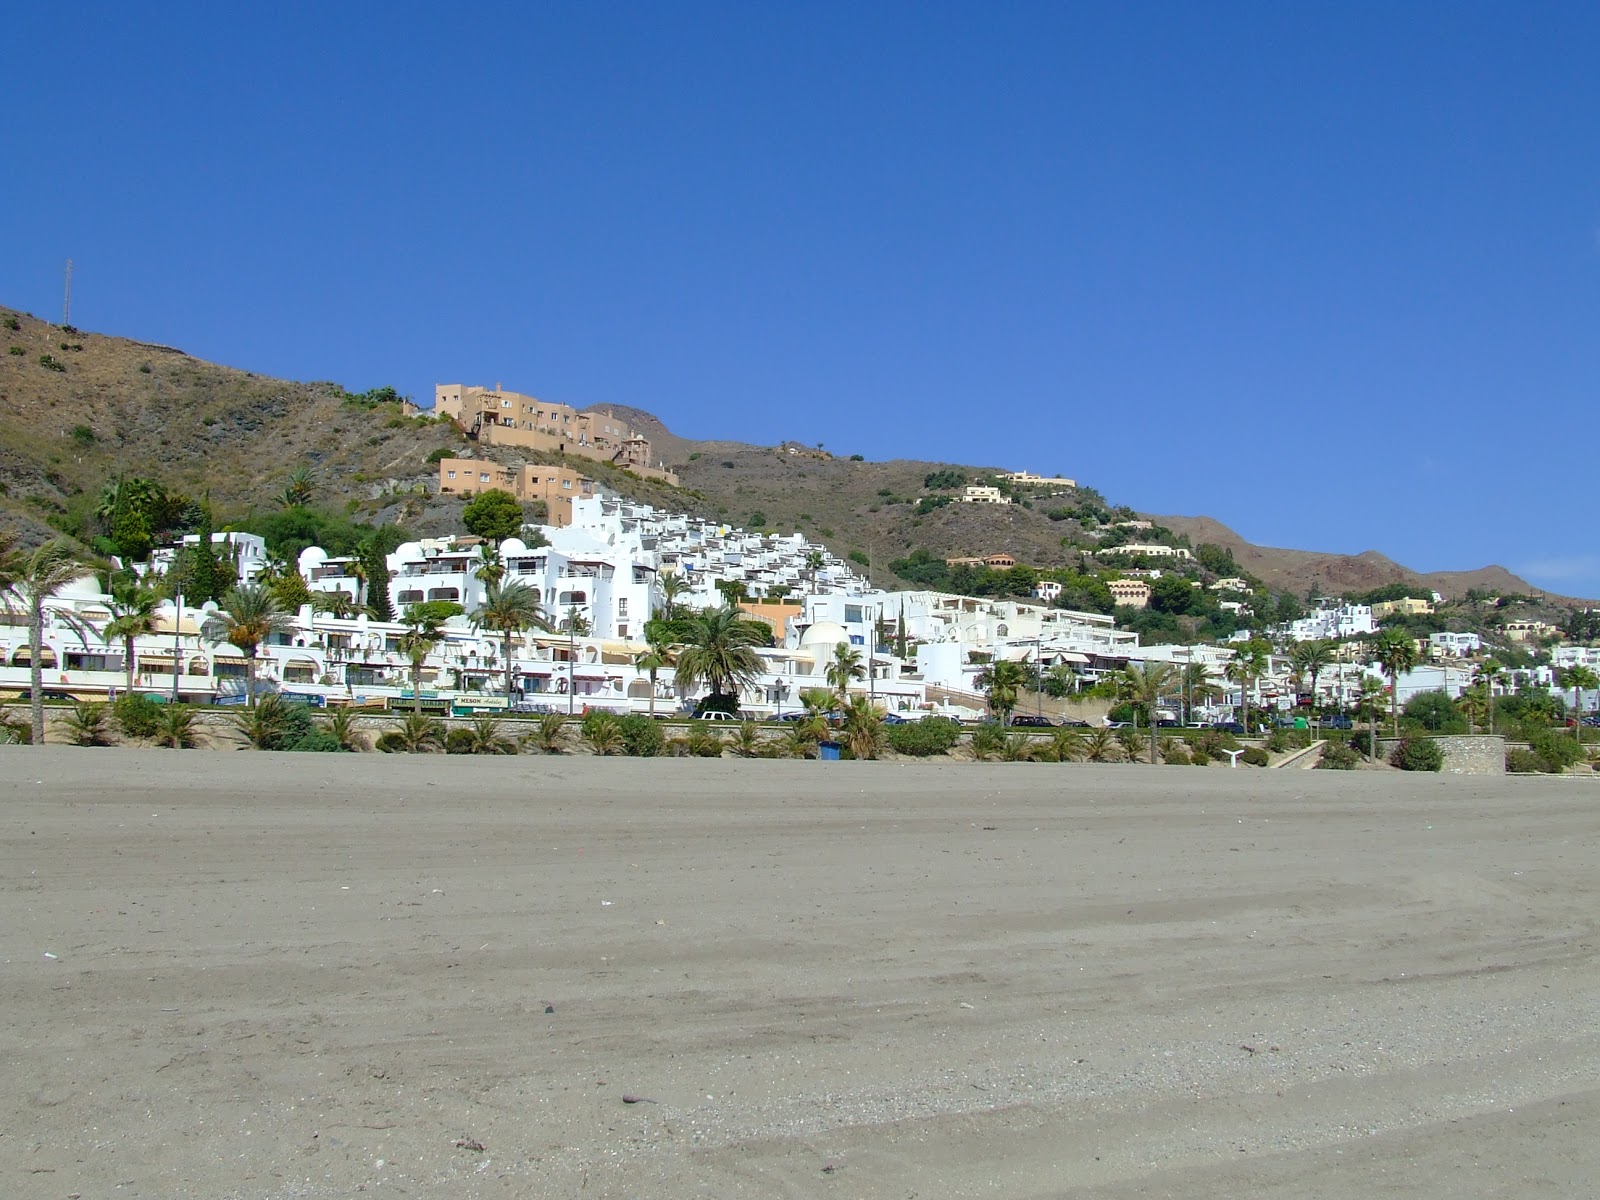 Foto van Playa de la Mena met hoog niveau van netheid